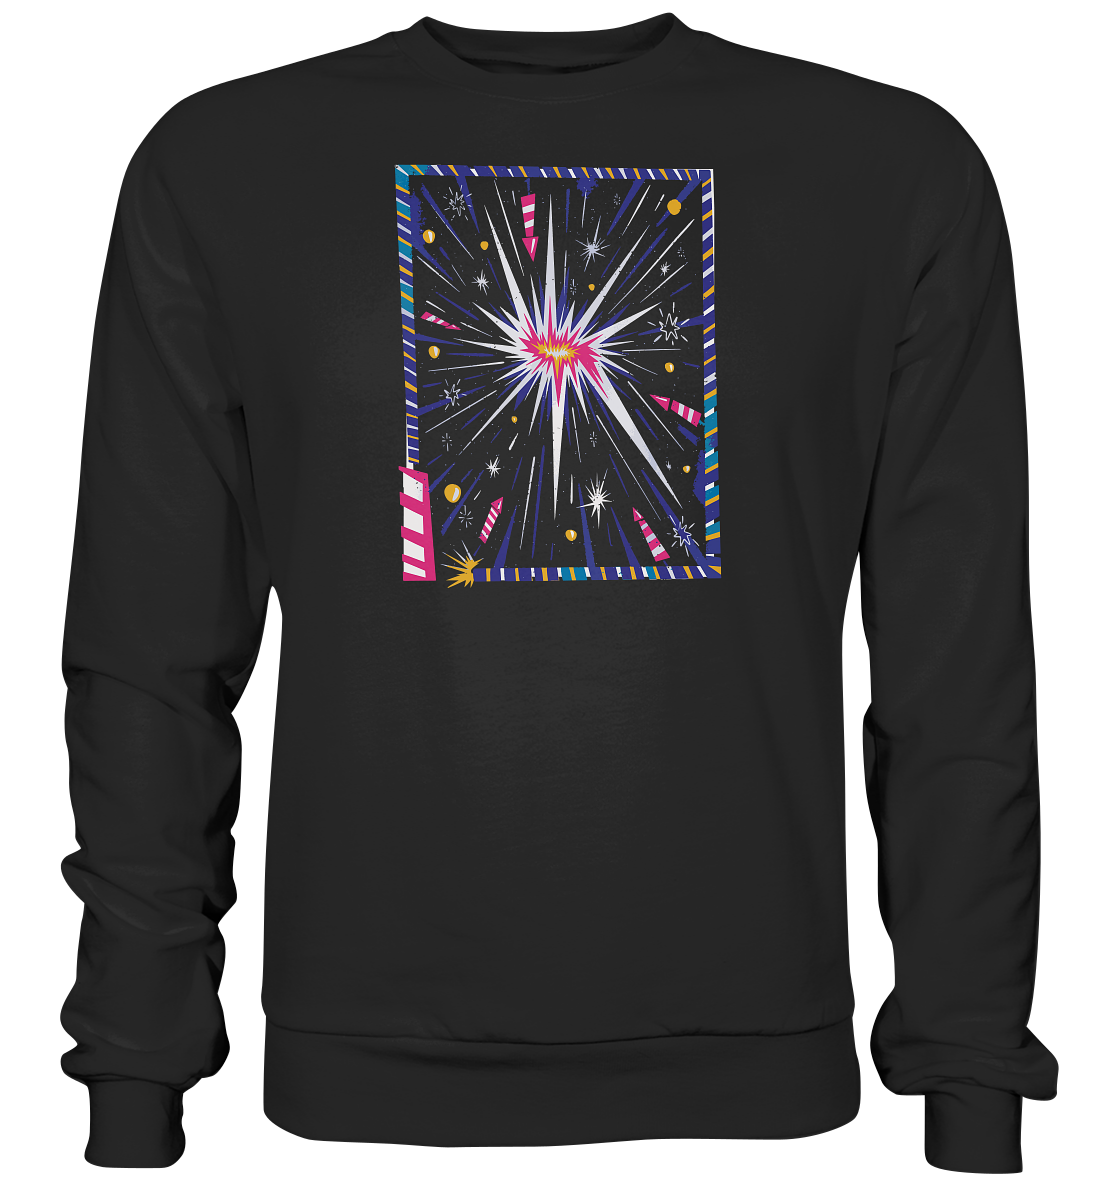 T-Shirt für Silvester, Feuerwerksfan , T-Shirt für jeden Silvesterfan , Raketen - Premium Sweatshirt